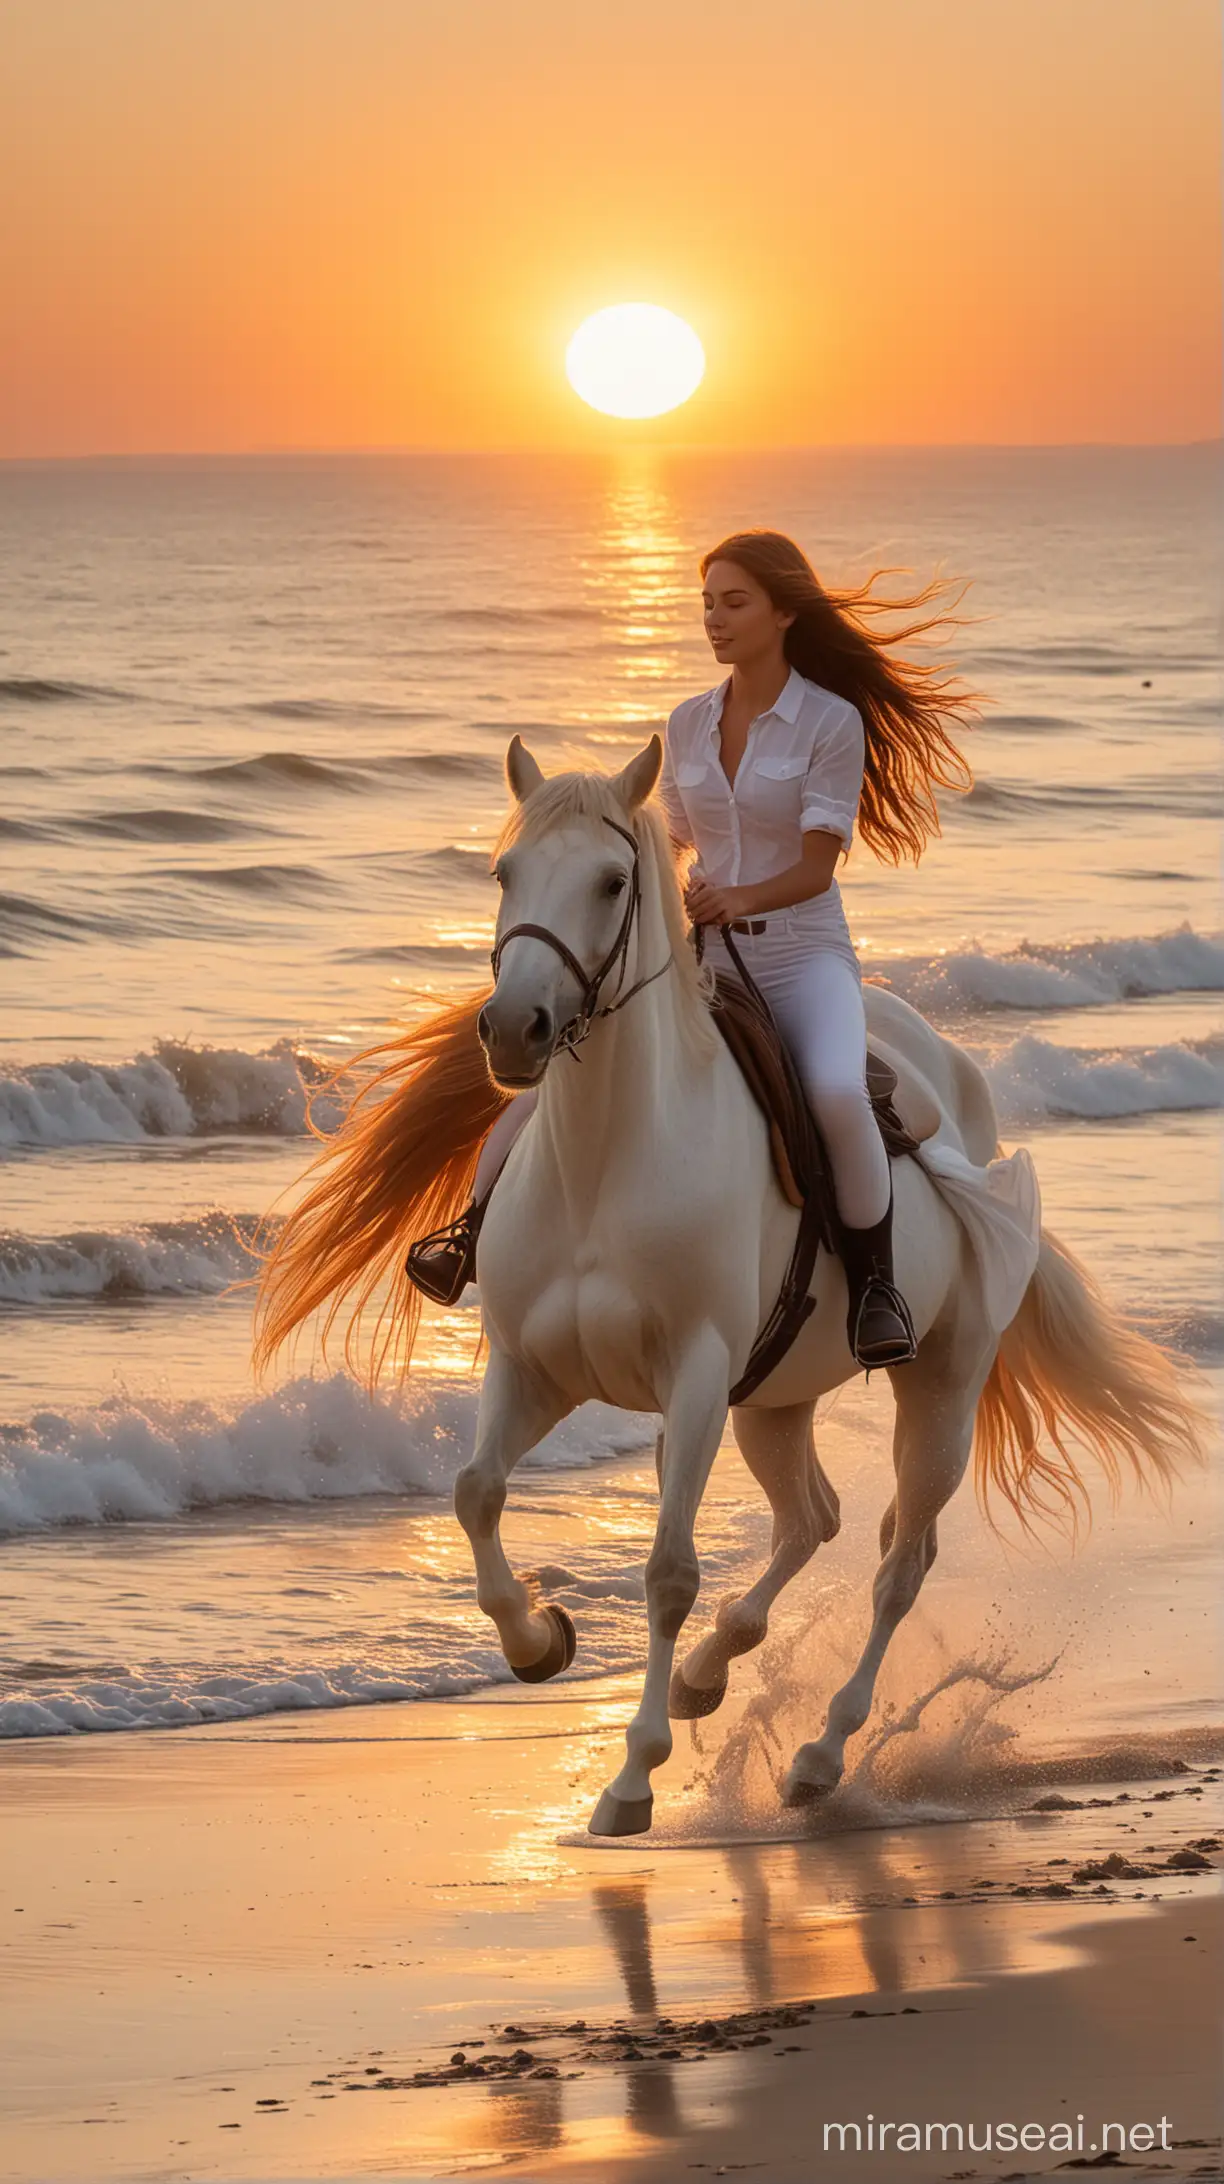 صورة جانبية لحصانان حصان أبيض تركبه فتاة جميلة ذات شعر طويل يتطاير في الهواء على شاطئ رملي أمام البحر، و الحصان الآخر يركبه شاب جميل ويجري خلف الفتاة. الوقت عند الغروب والشمس تظهر بحجم كبير خلف البحر، لون الشمس البرتقالي يملأ المكان و يغطي المشهد كاملا.